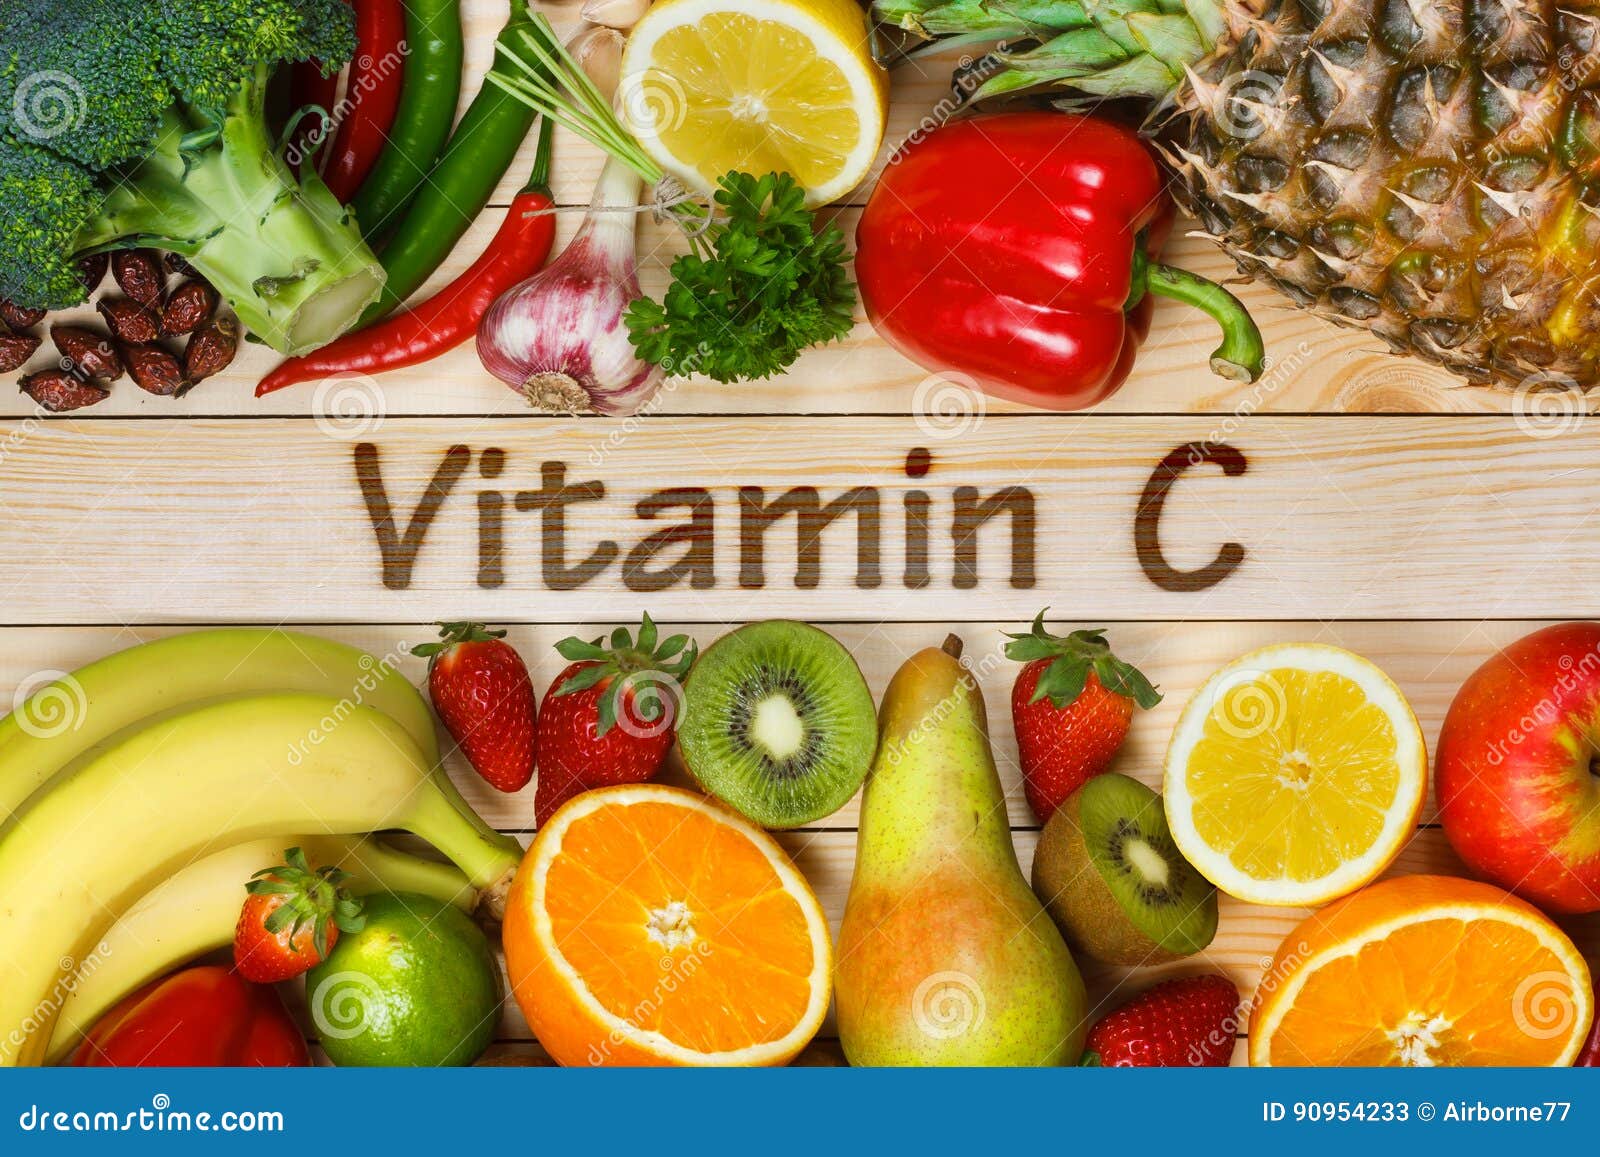 Voedsel Hoog Vitamine C afbeelding. Image gezond 90954233